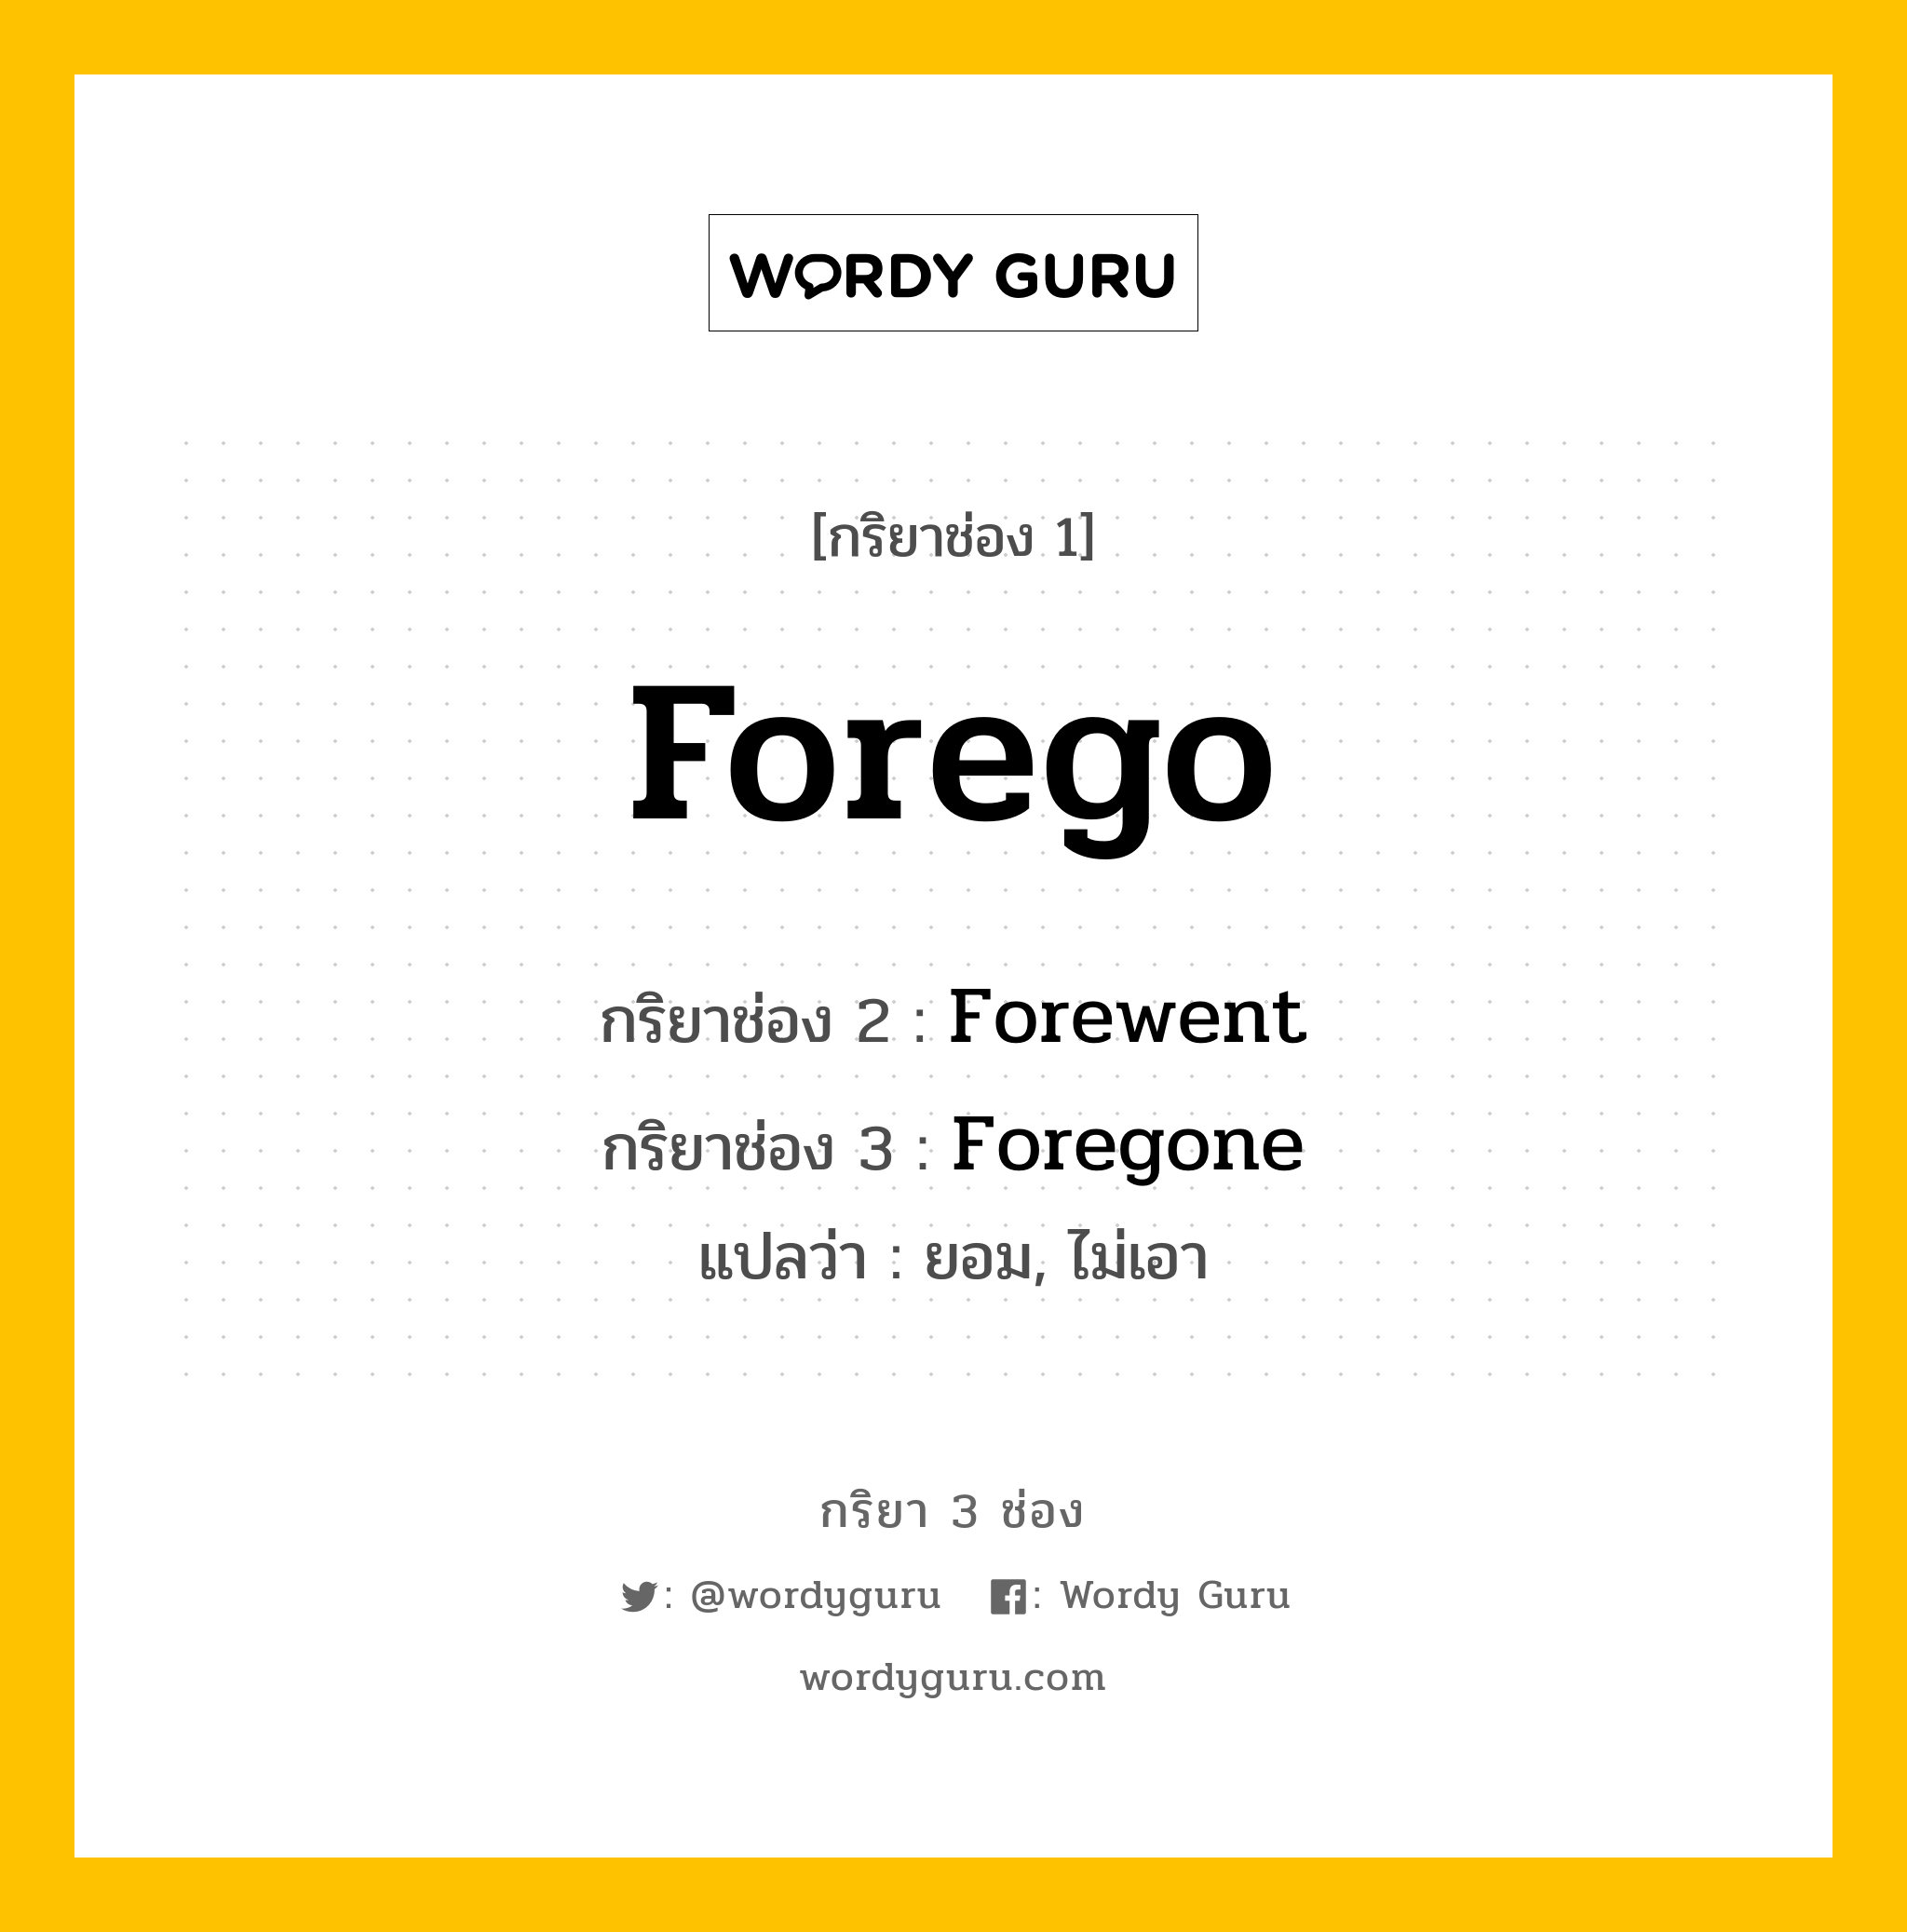 Forego มีกริยา 3 ช่องอะไรบ้าง? คำศัพท์ในกลุ่มประเภท Irregular Verb, กริยาช่อง 1 Forego กริยาช่อง 2 Forewent กริยาช่อง 3 Foregone แปลว่า ยอม, ไม่เอา หมวด Irregular Verb